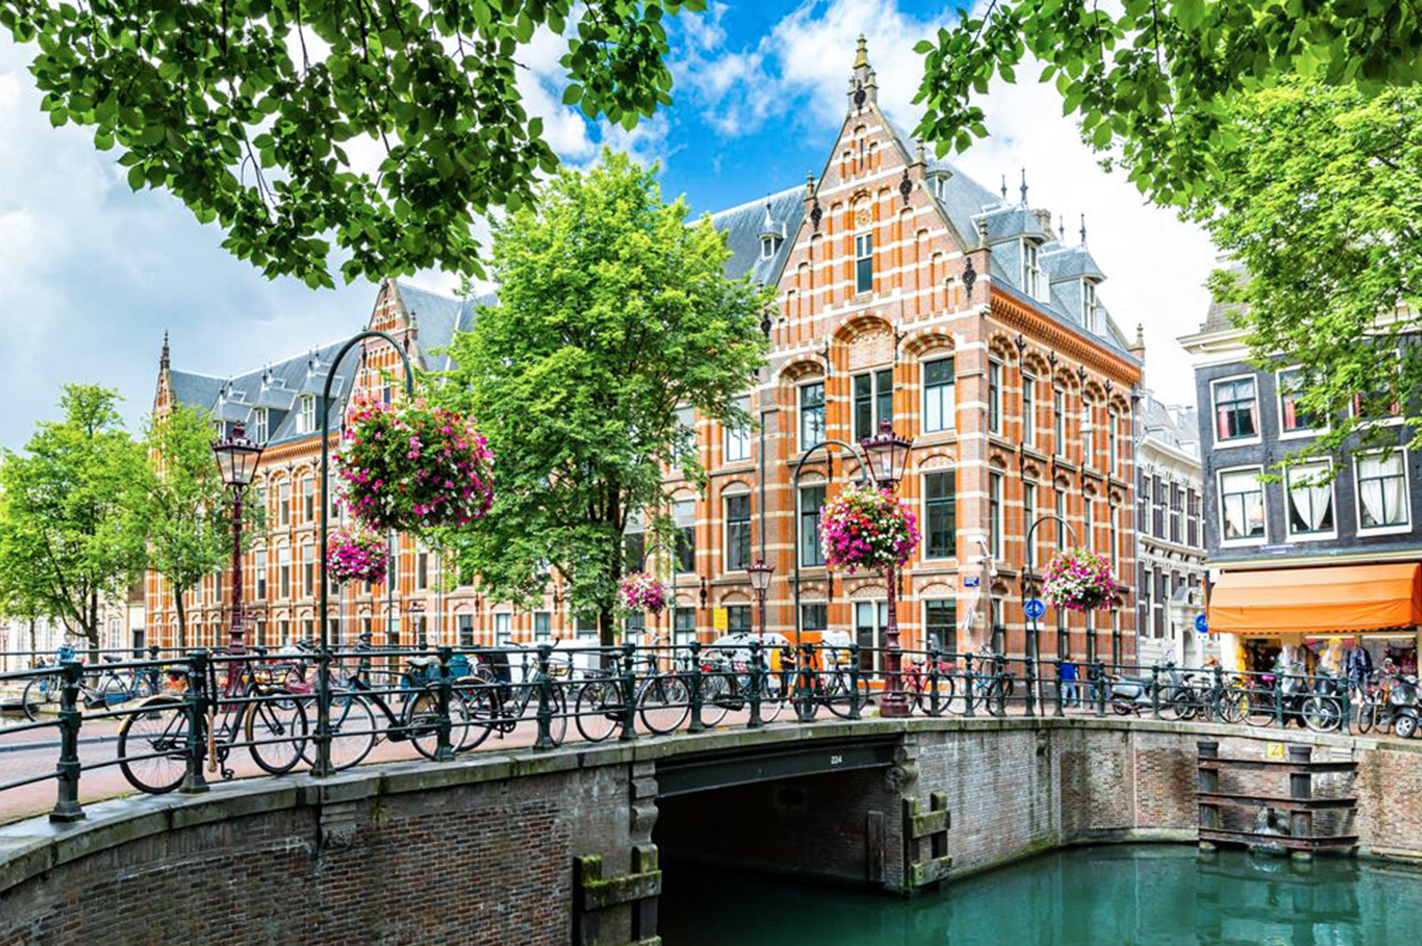 Städtetrip Amsterdam mit Grachten-Bootstour für 2 (2 Tage) – Freie Fahrt im Venedig des Nordens!